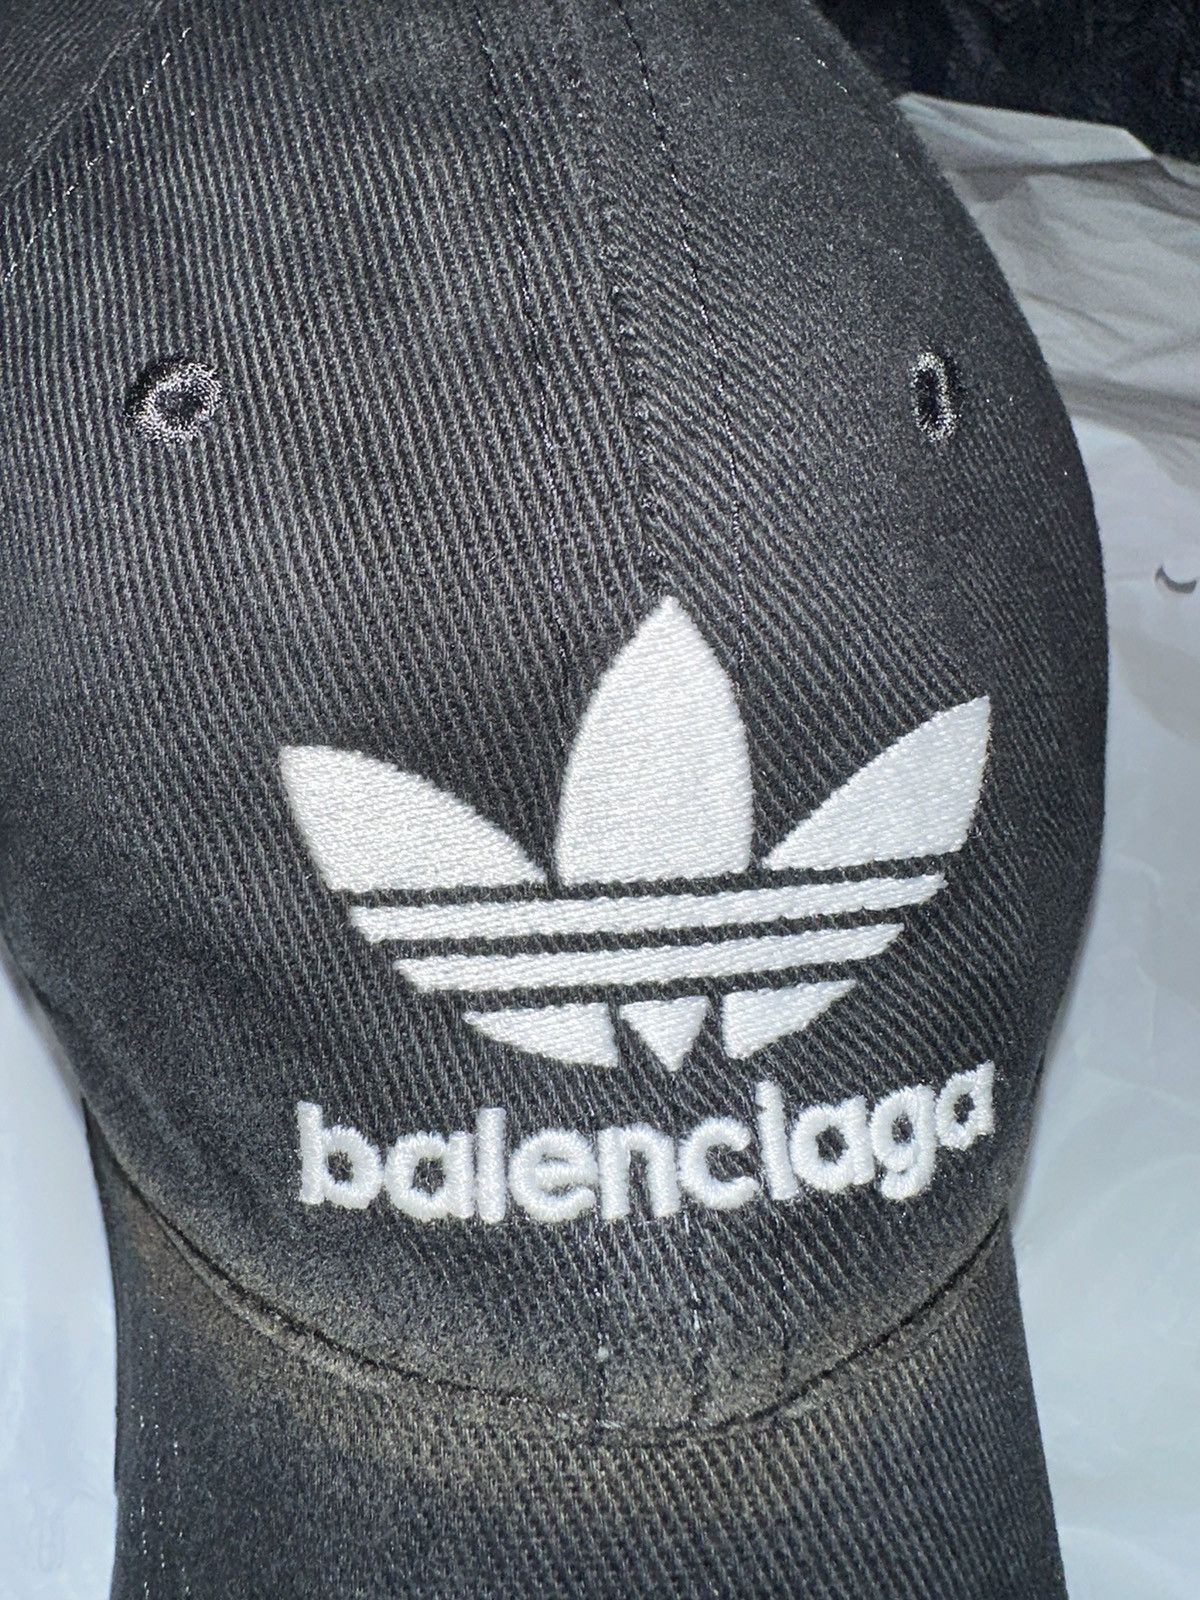 Adidas Balenciaga Adidas Trefoil Logo Cap (Size S) | Grailed